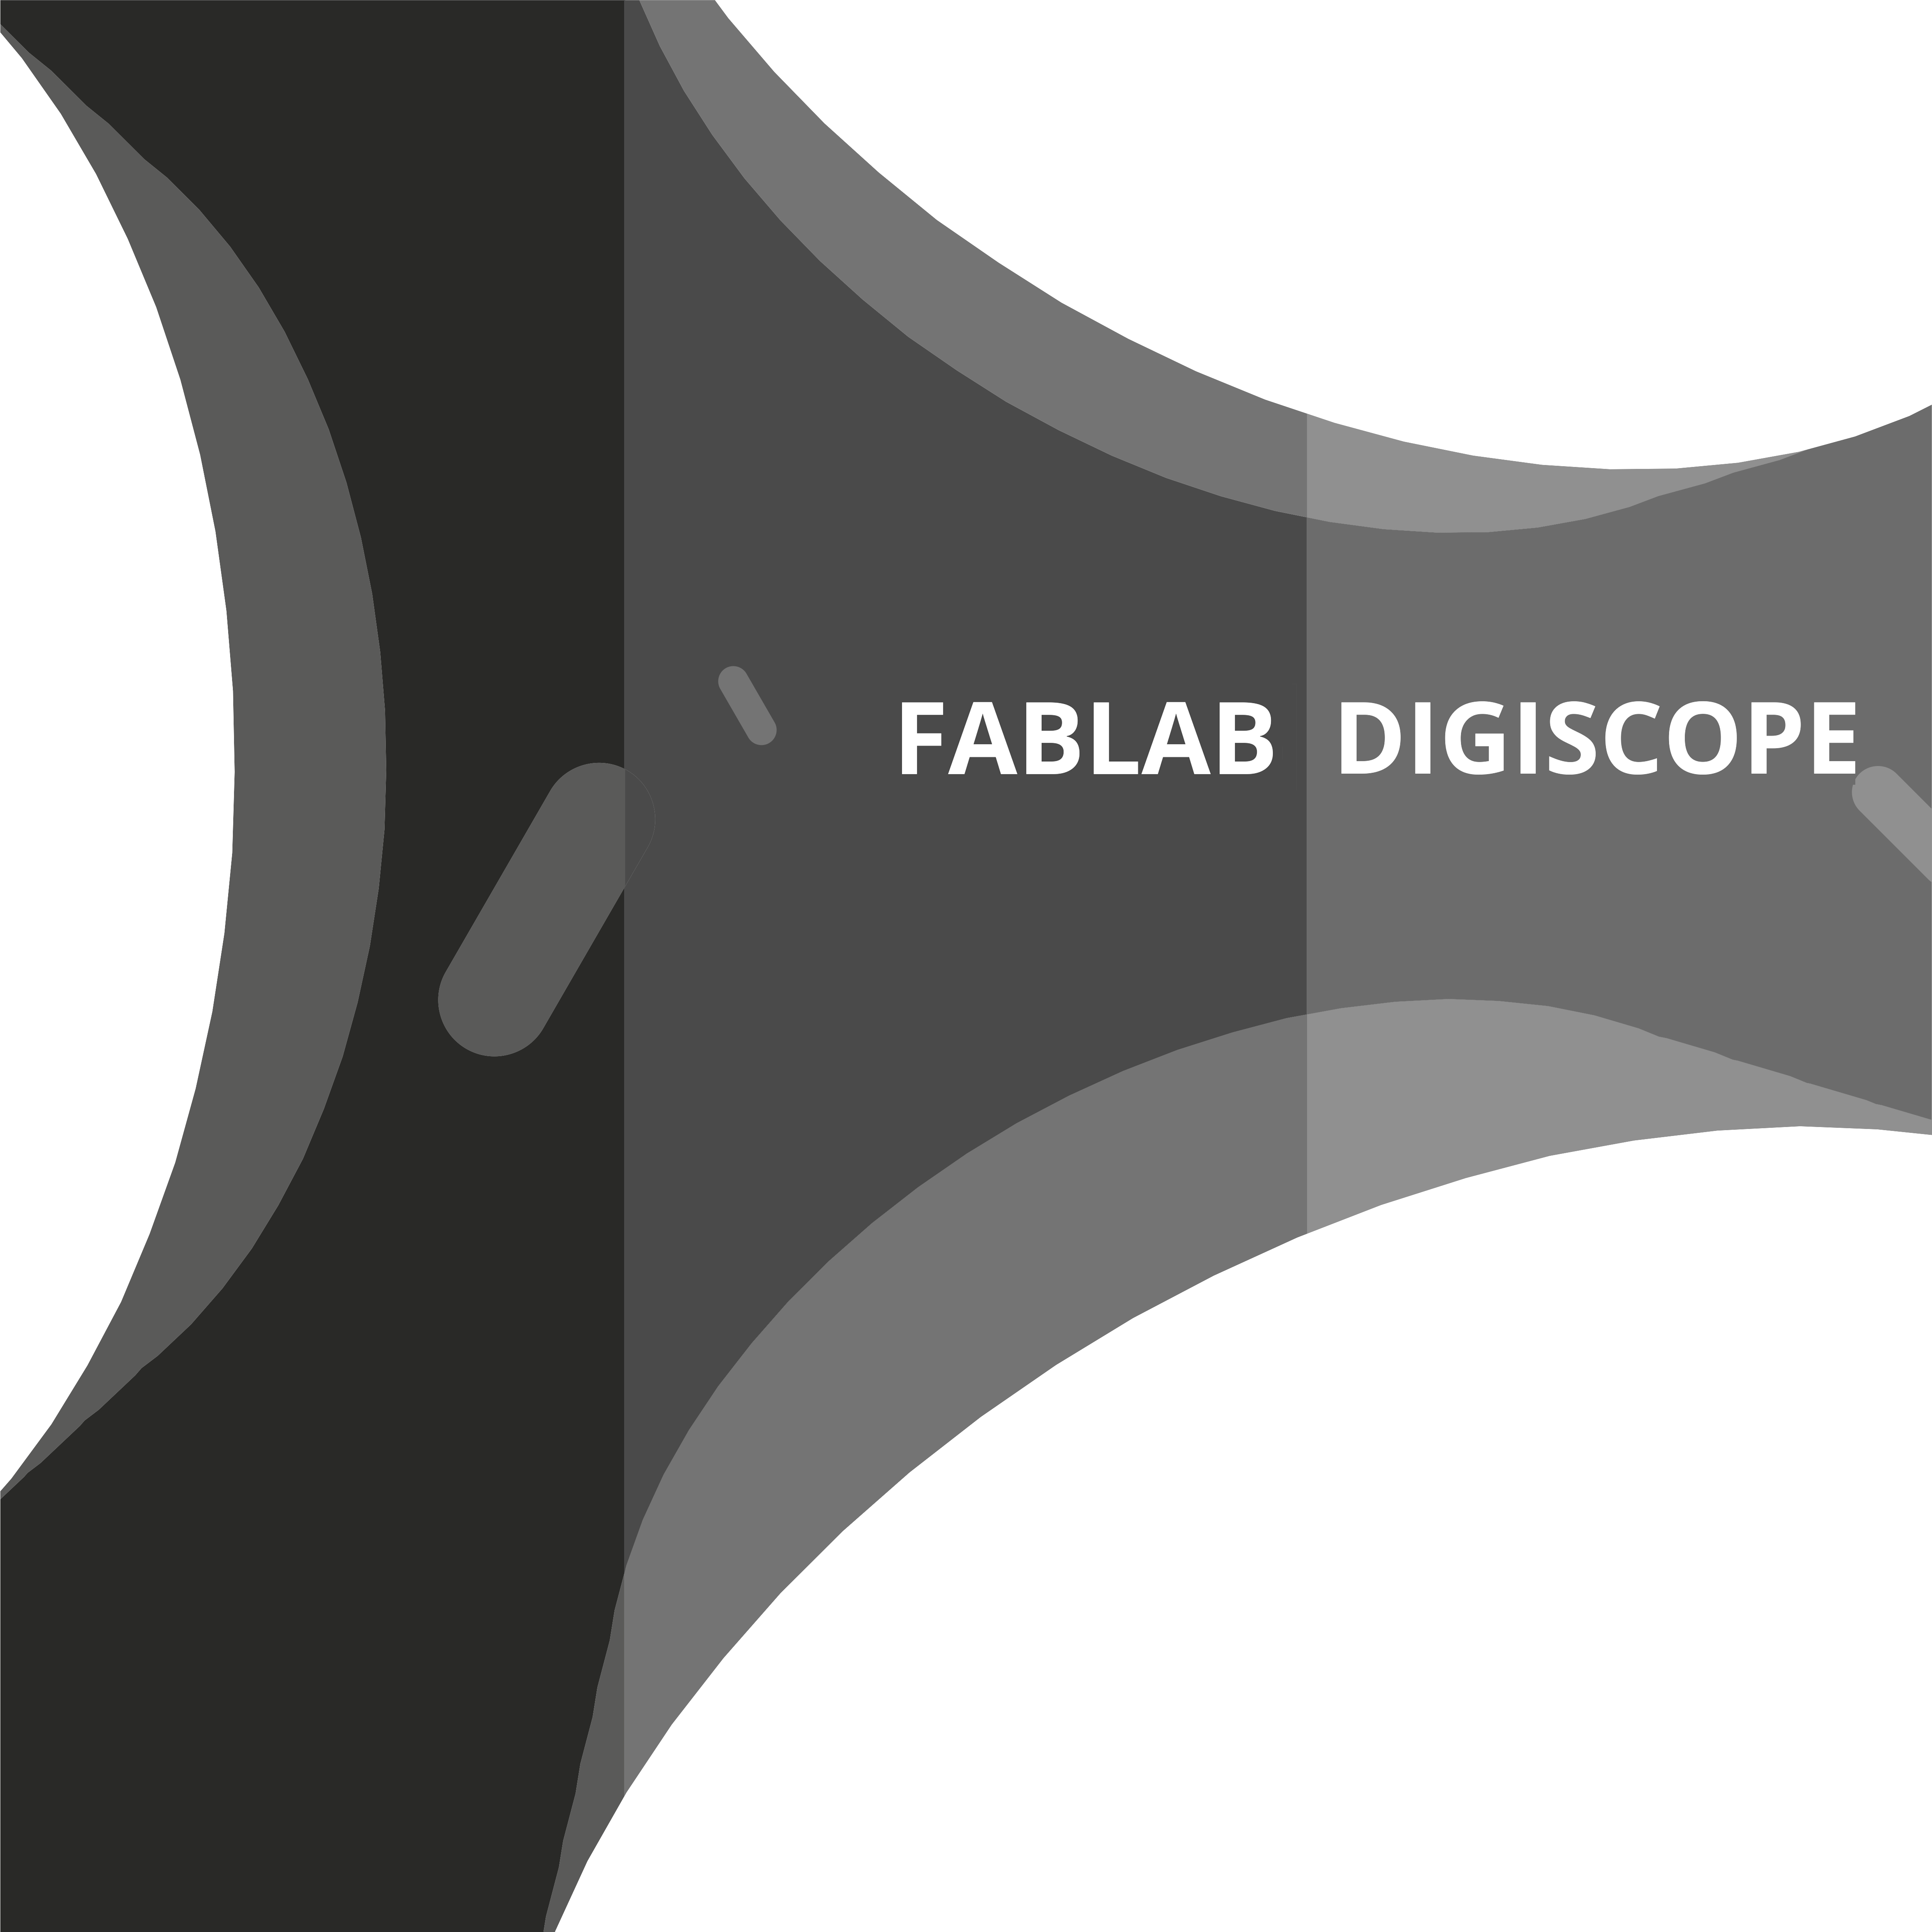 Fablab Digiscope